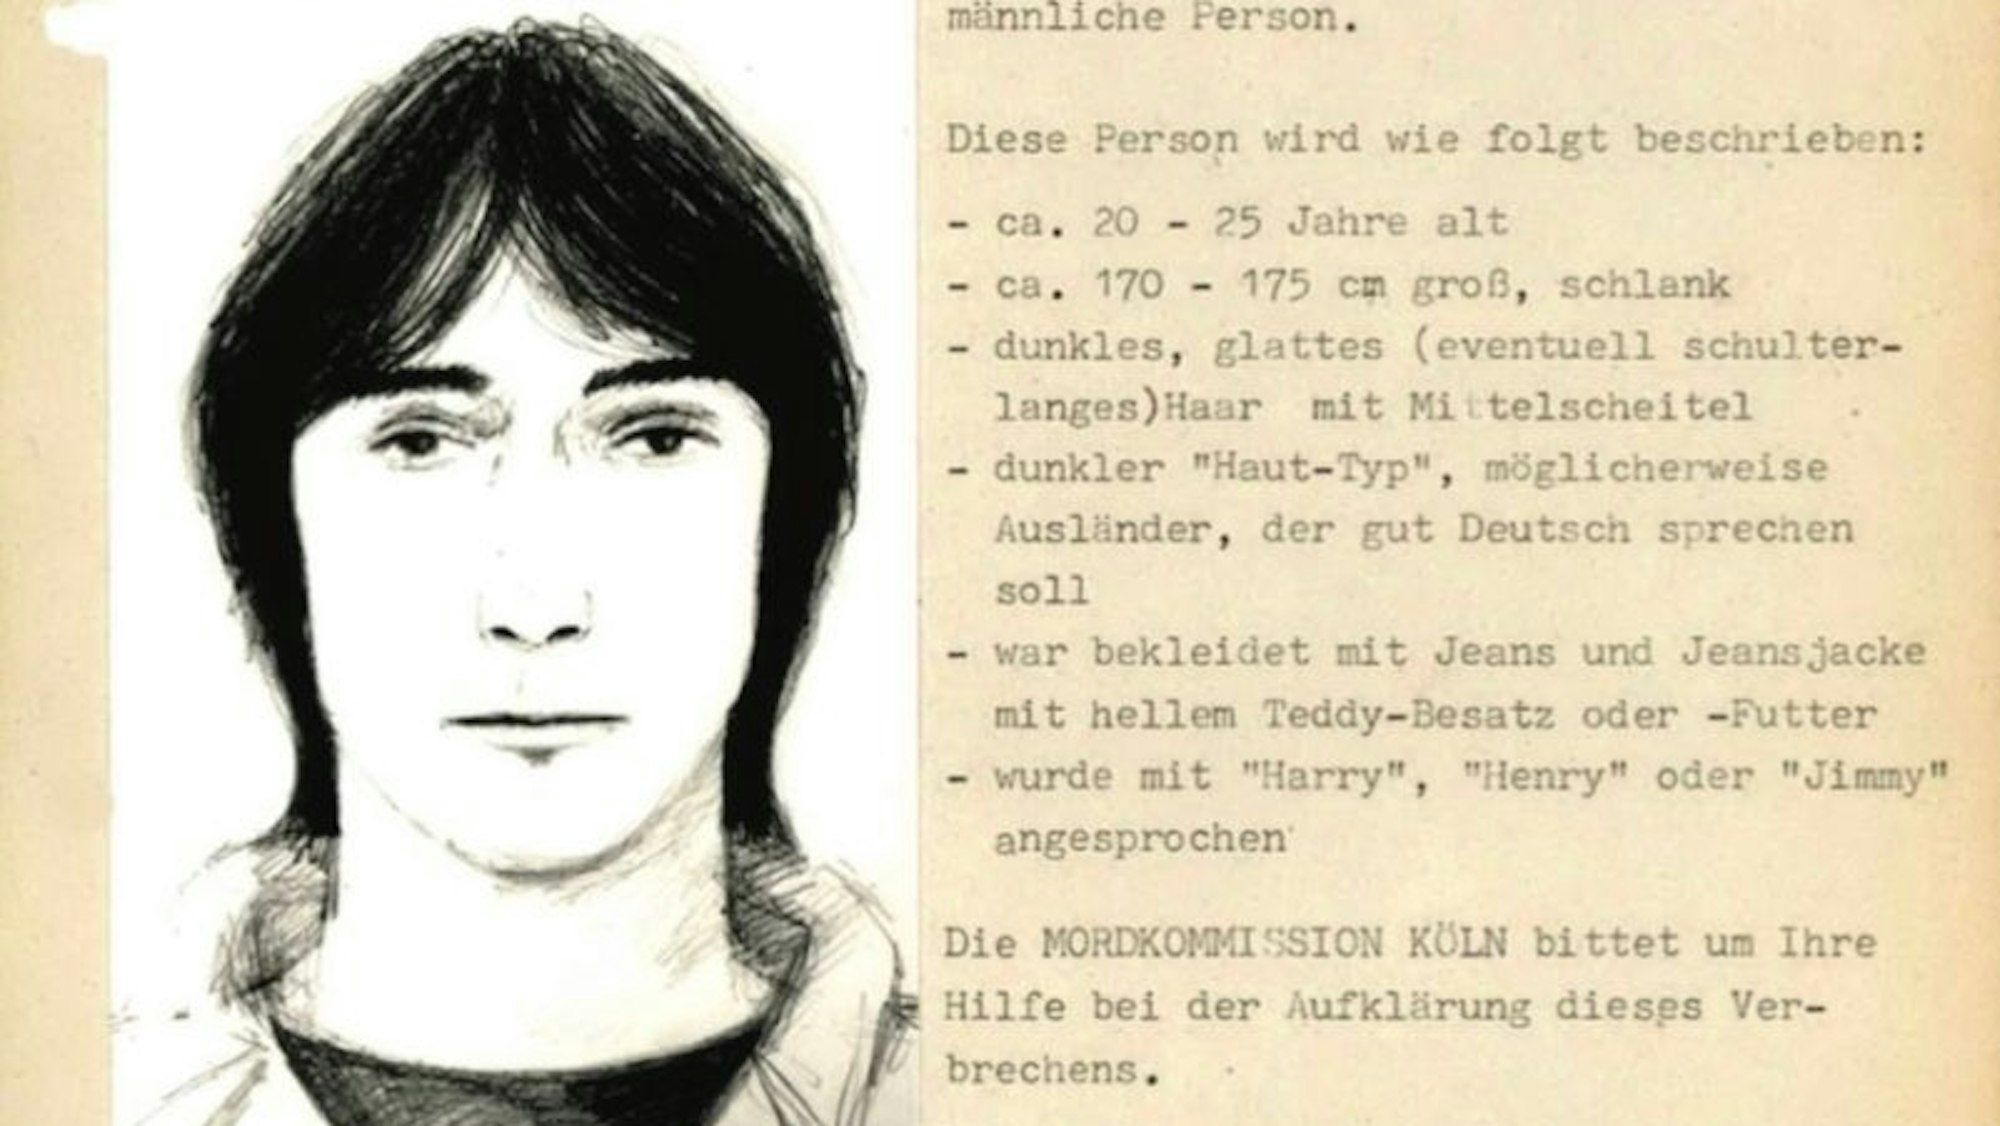 Fahndungsplakat nach dem versuchten Raubmord 1987 in Köln-Ehrenfeld